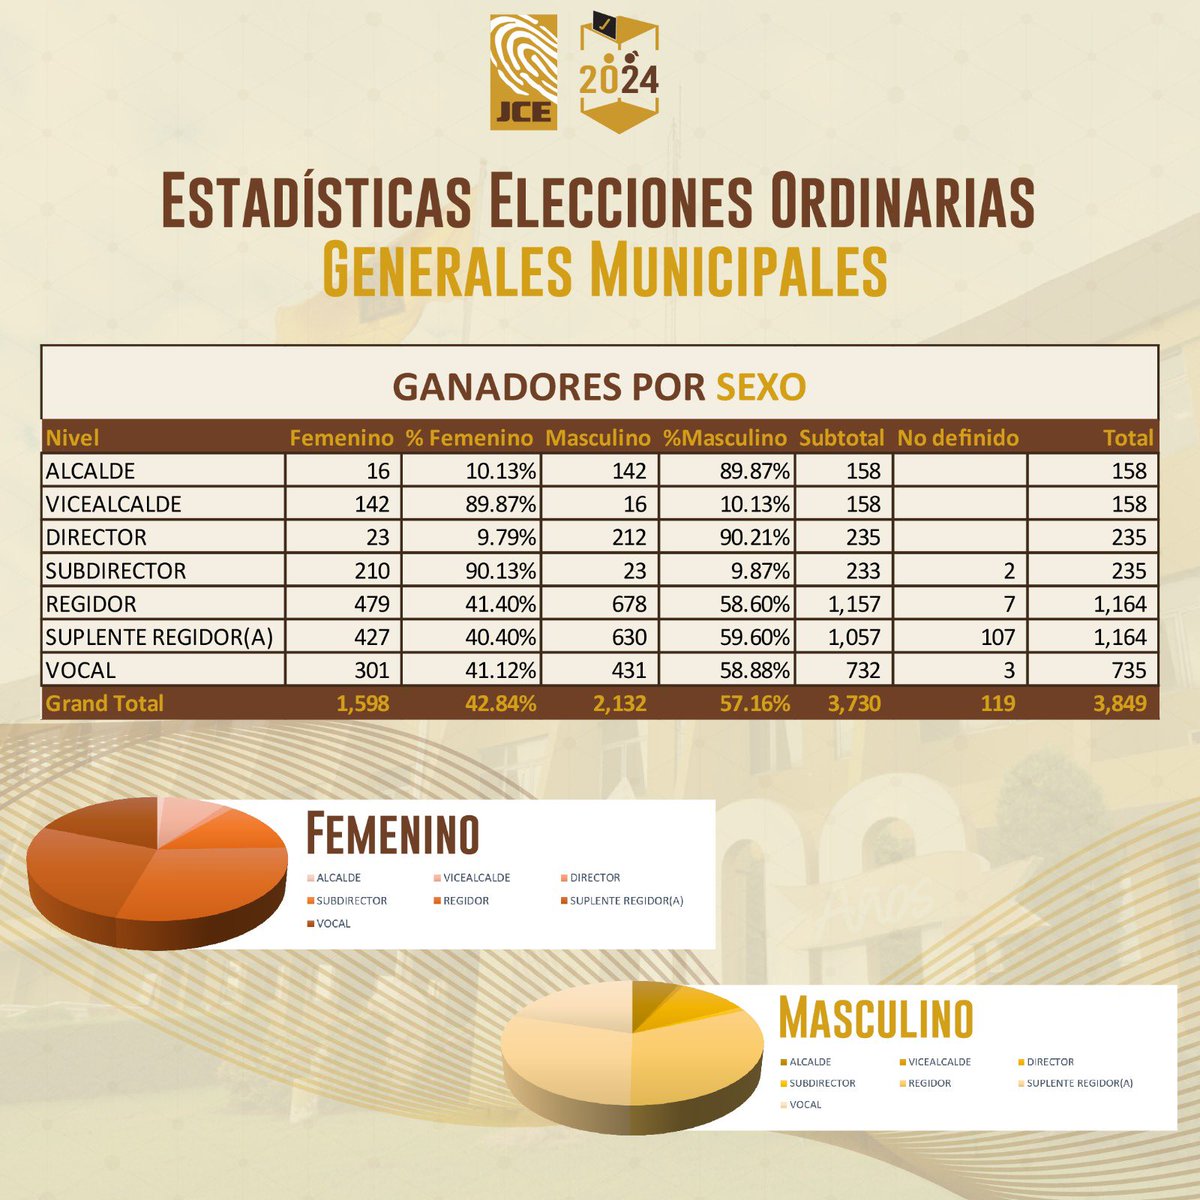 #JCEInforma | La Junta Central Electoral comparte los datos estadísticos de las #EleccionesMunicipalesRD2024.

#Elecciones2024 #VotaRD2024 #EleccionesRD2024